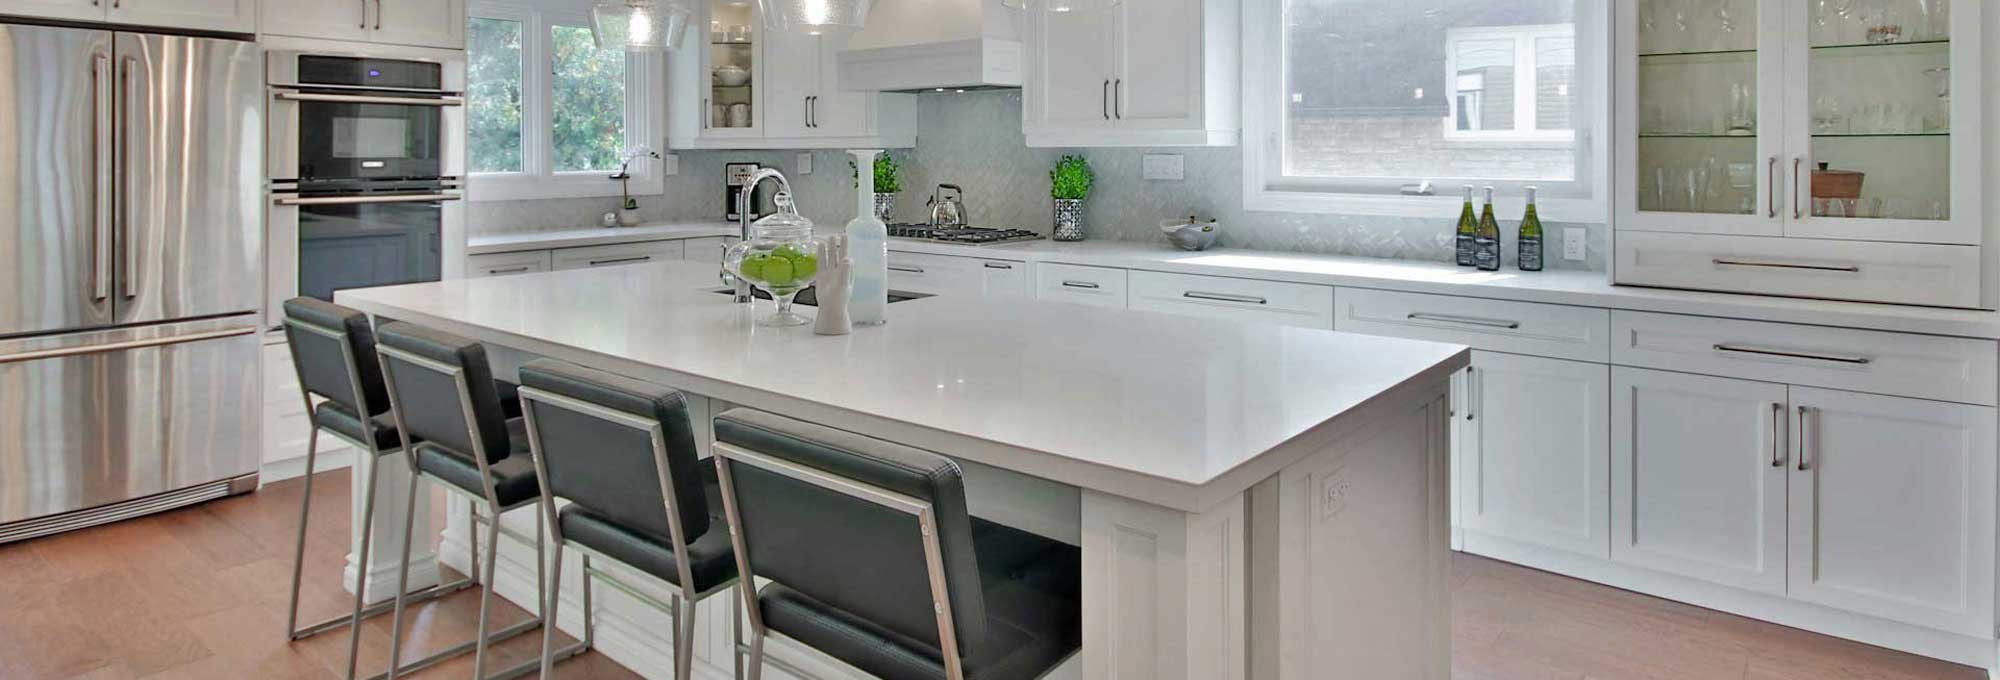 Beautiful modern kitchen cabinets